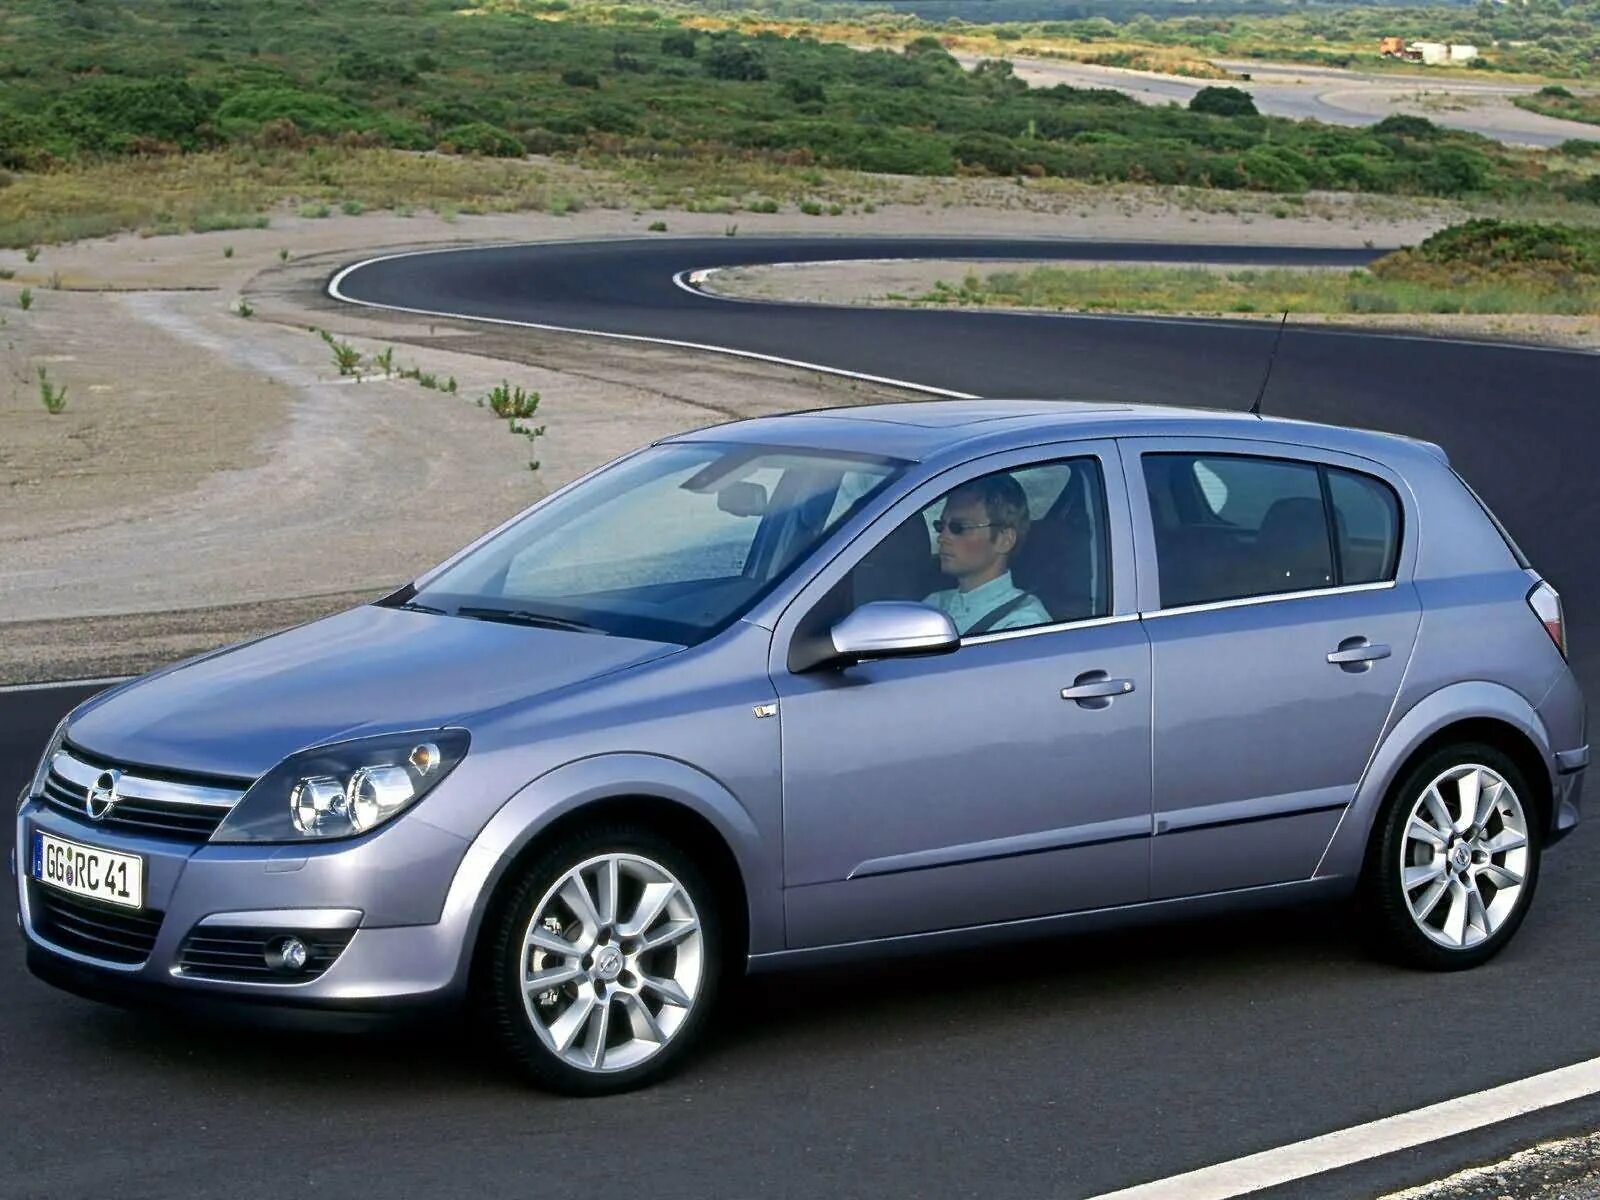 Opel c 1.8. Opel Astra h 2004. Opel Astra 2004. Opel Astra 2004 хэтчбек.